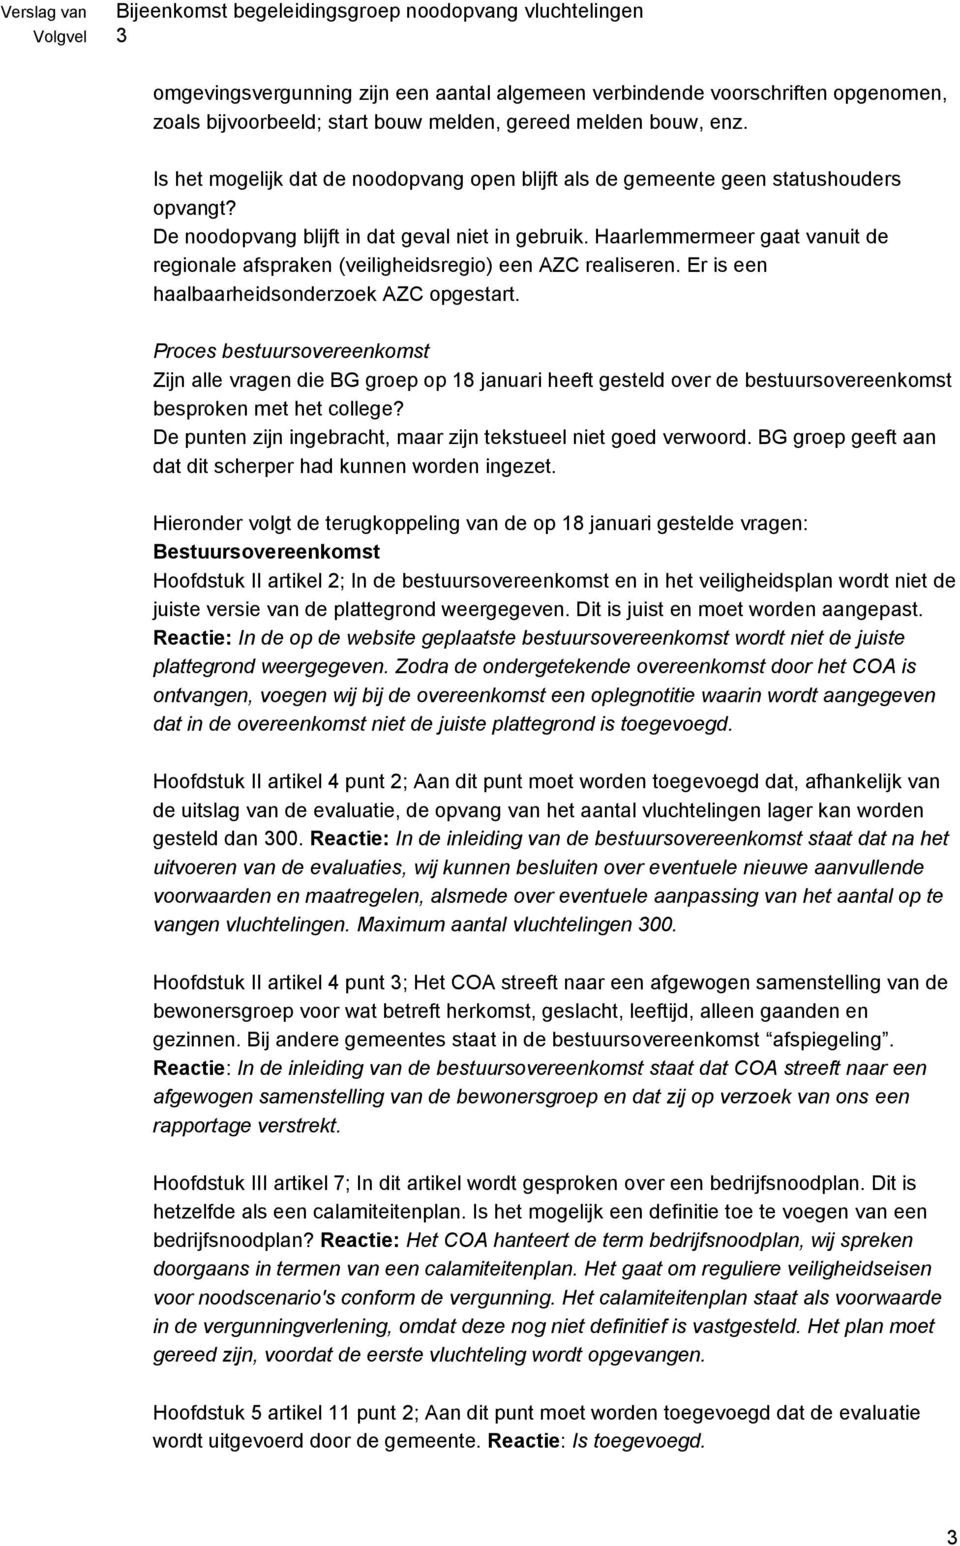 Haarlemmermeer gaat vanuit de regionale afspraken (veiligheidsregio) een AZC realiseren. Er is een haalbaarheidsonderzoek AZC opgestart.